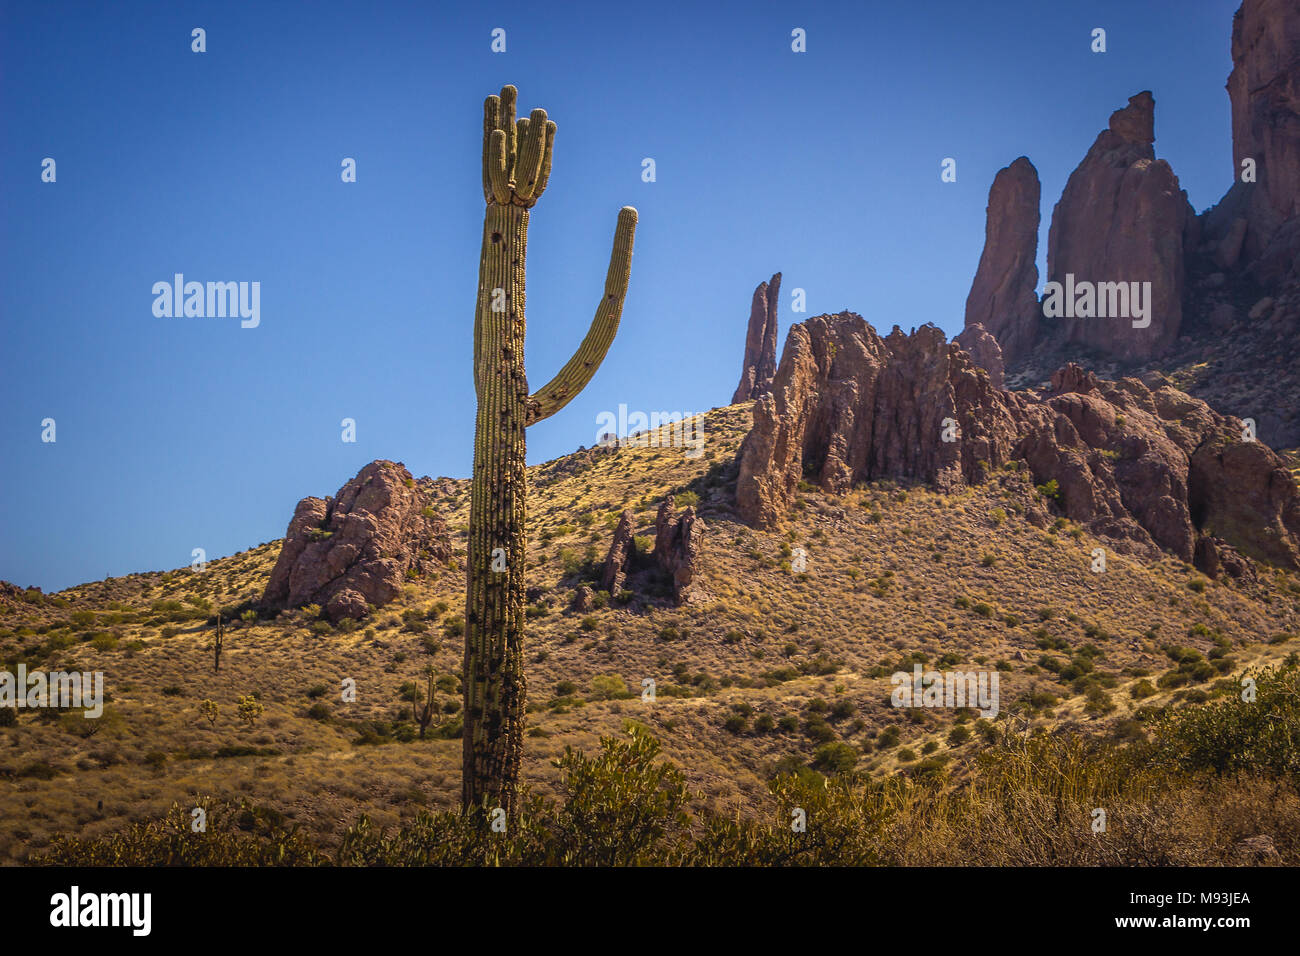 Saguaro cactus magnifique avec des montagnes en arrière-plan sur une journée ensoleillée avec ciel bleu clair, Lost Dutchman State Park, Arizona Banque D'Images